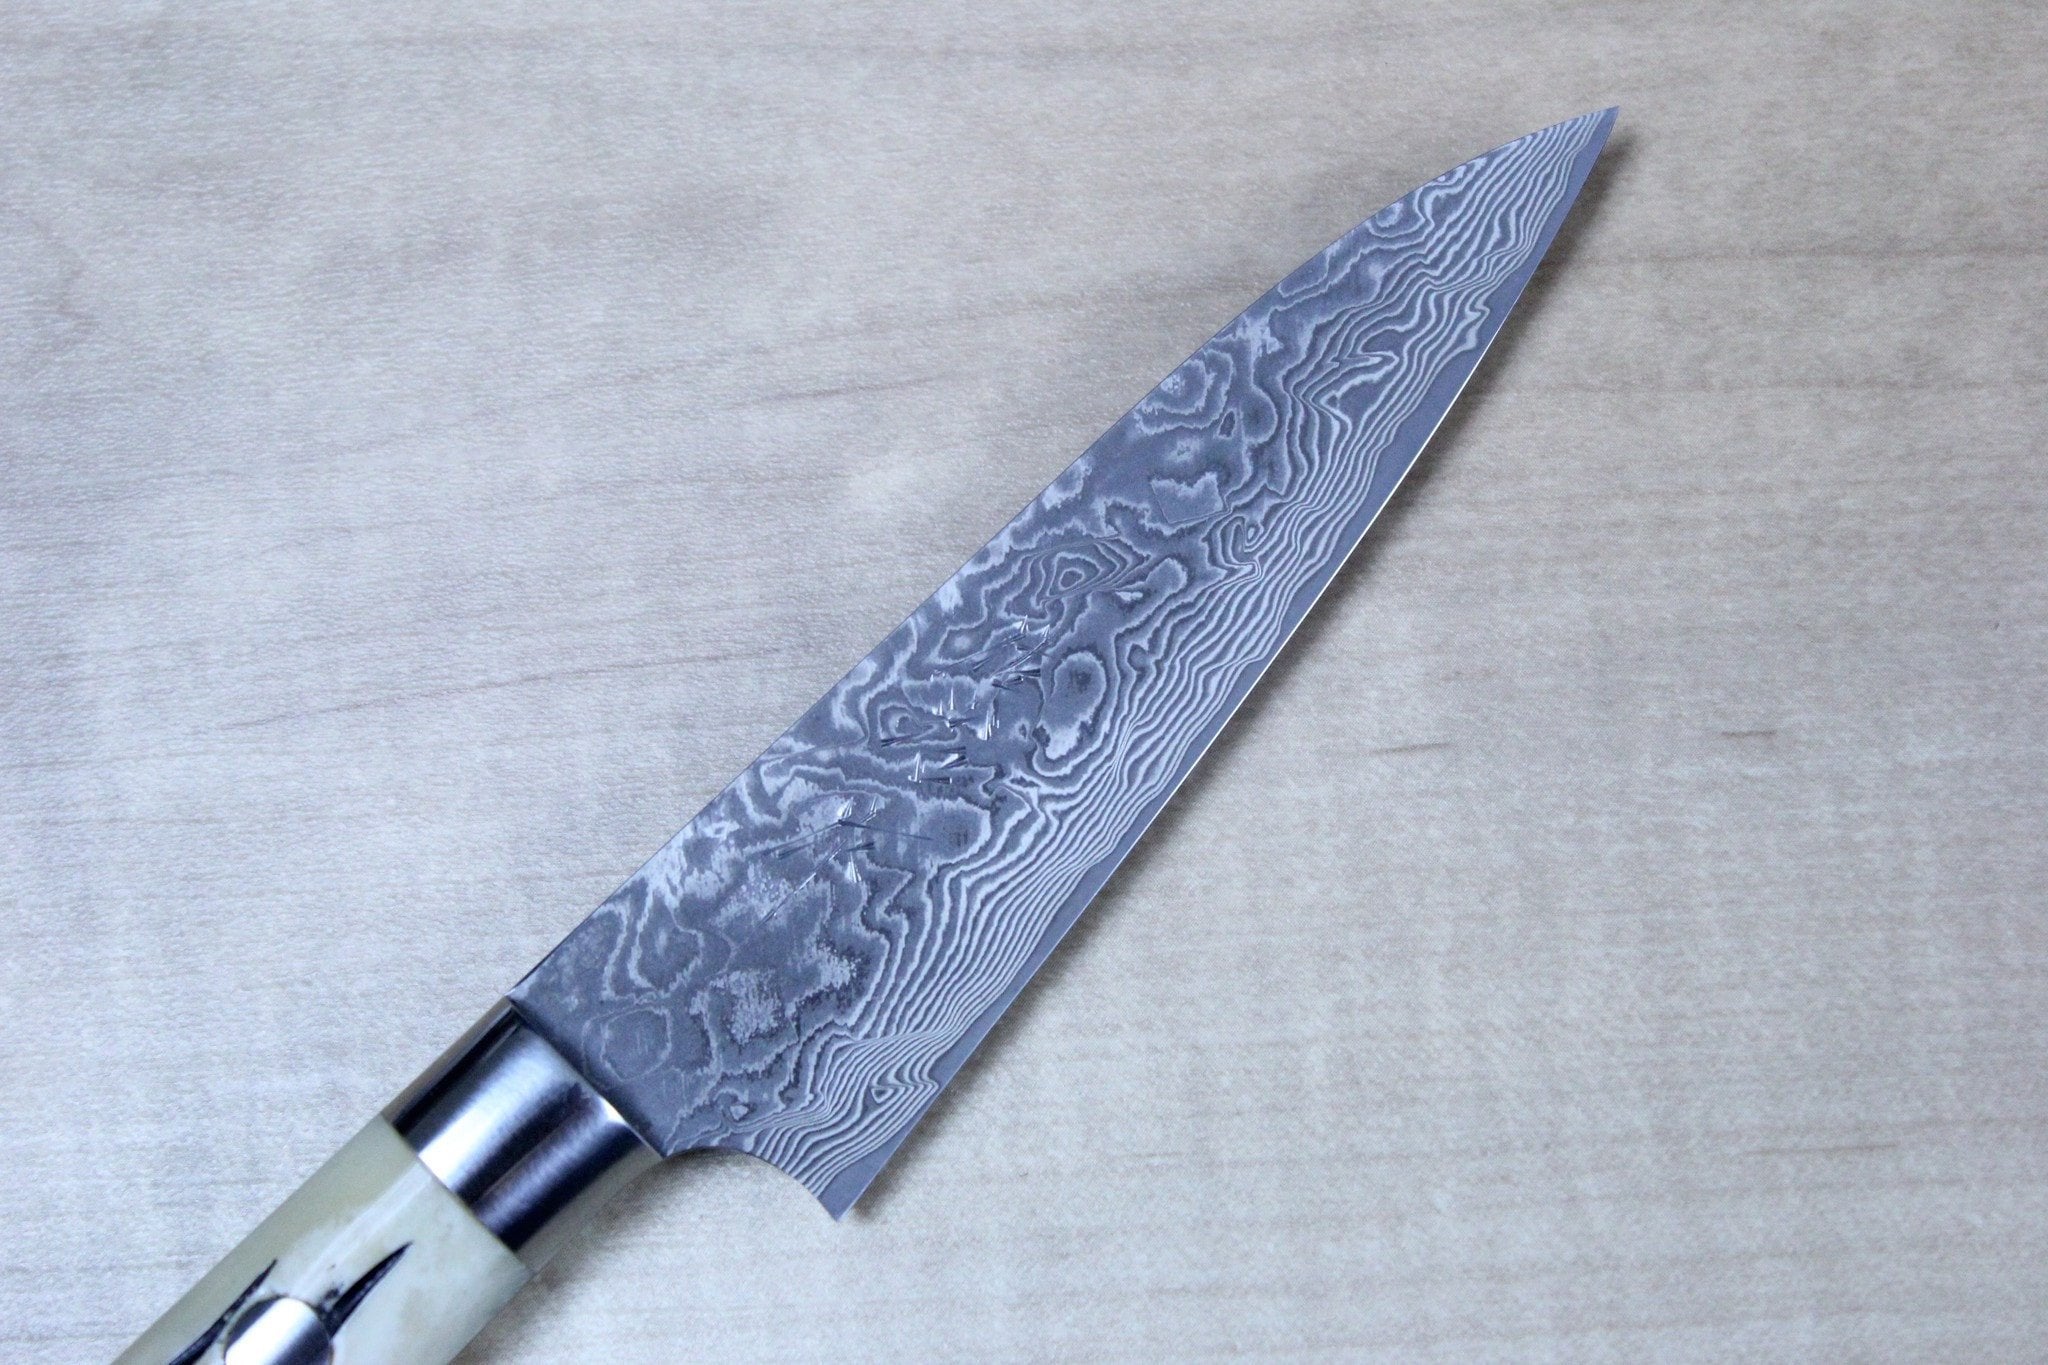 KOTAI Paring Knife - Pakka Collection - 90 mm blade